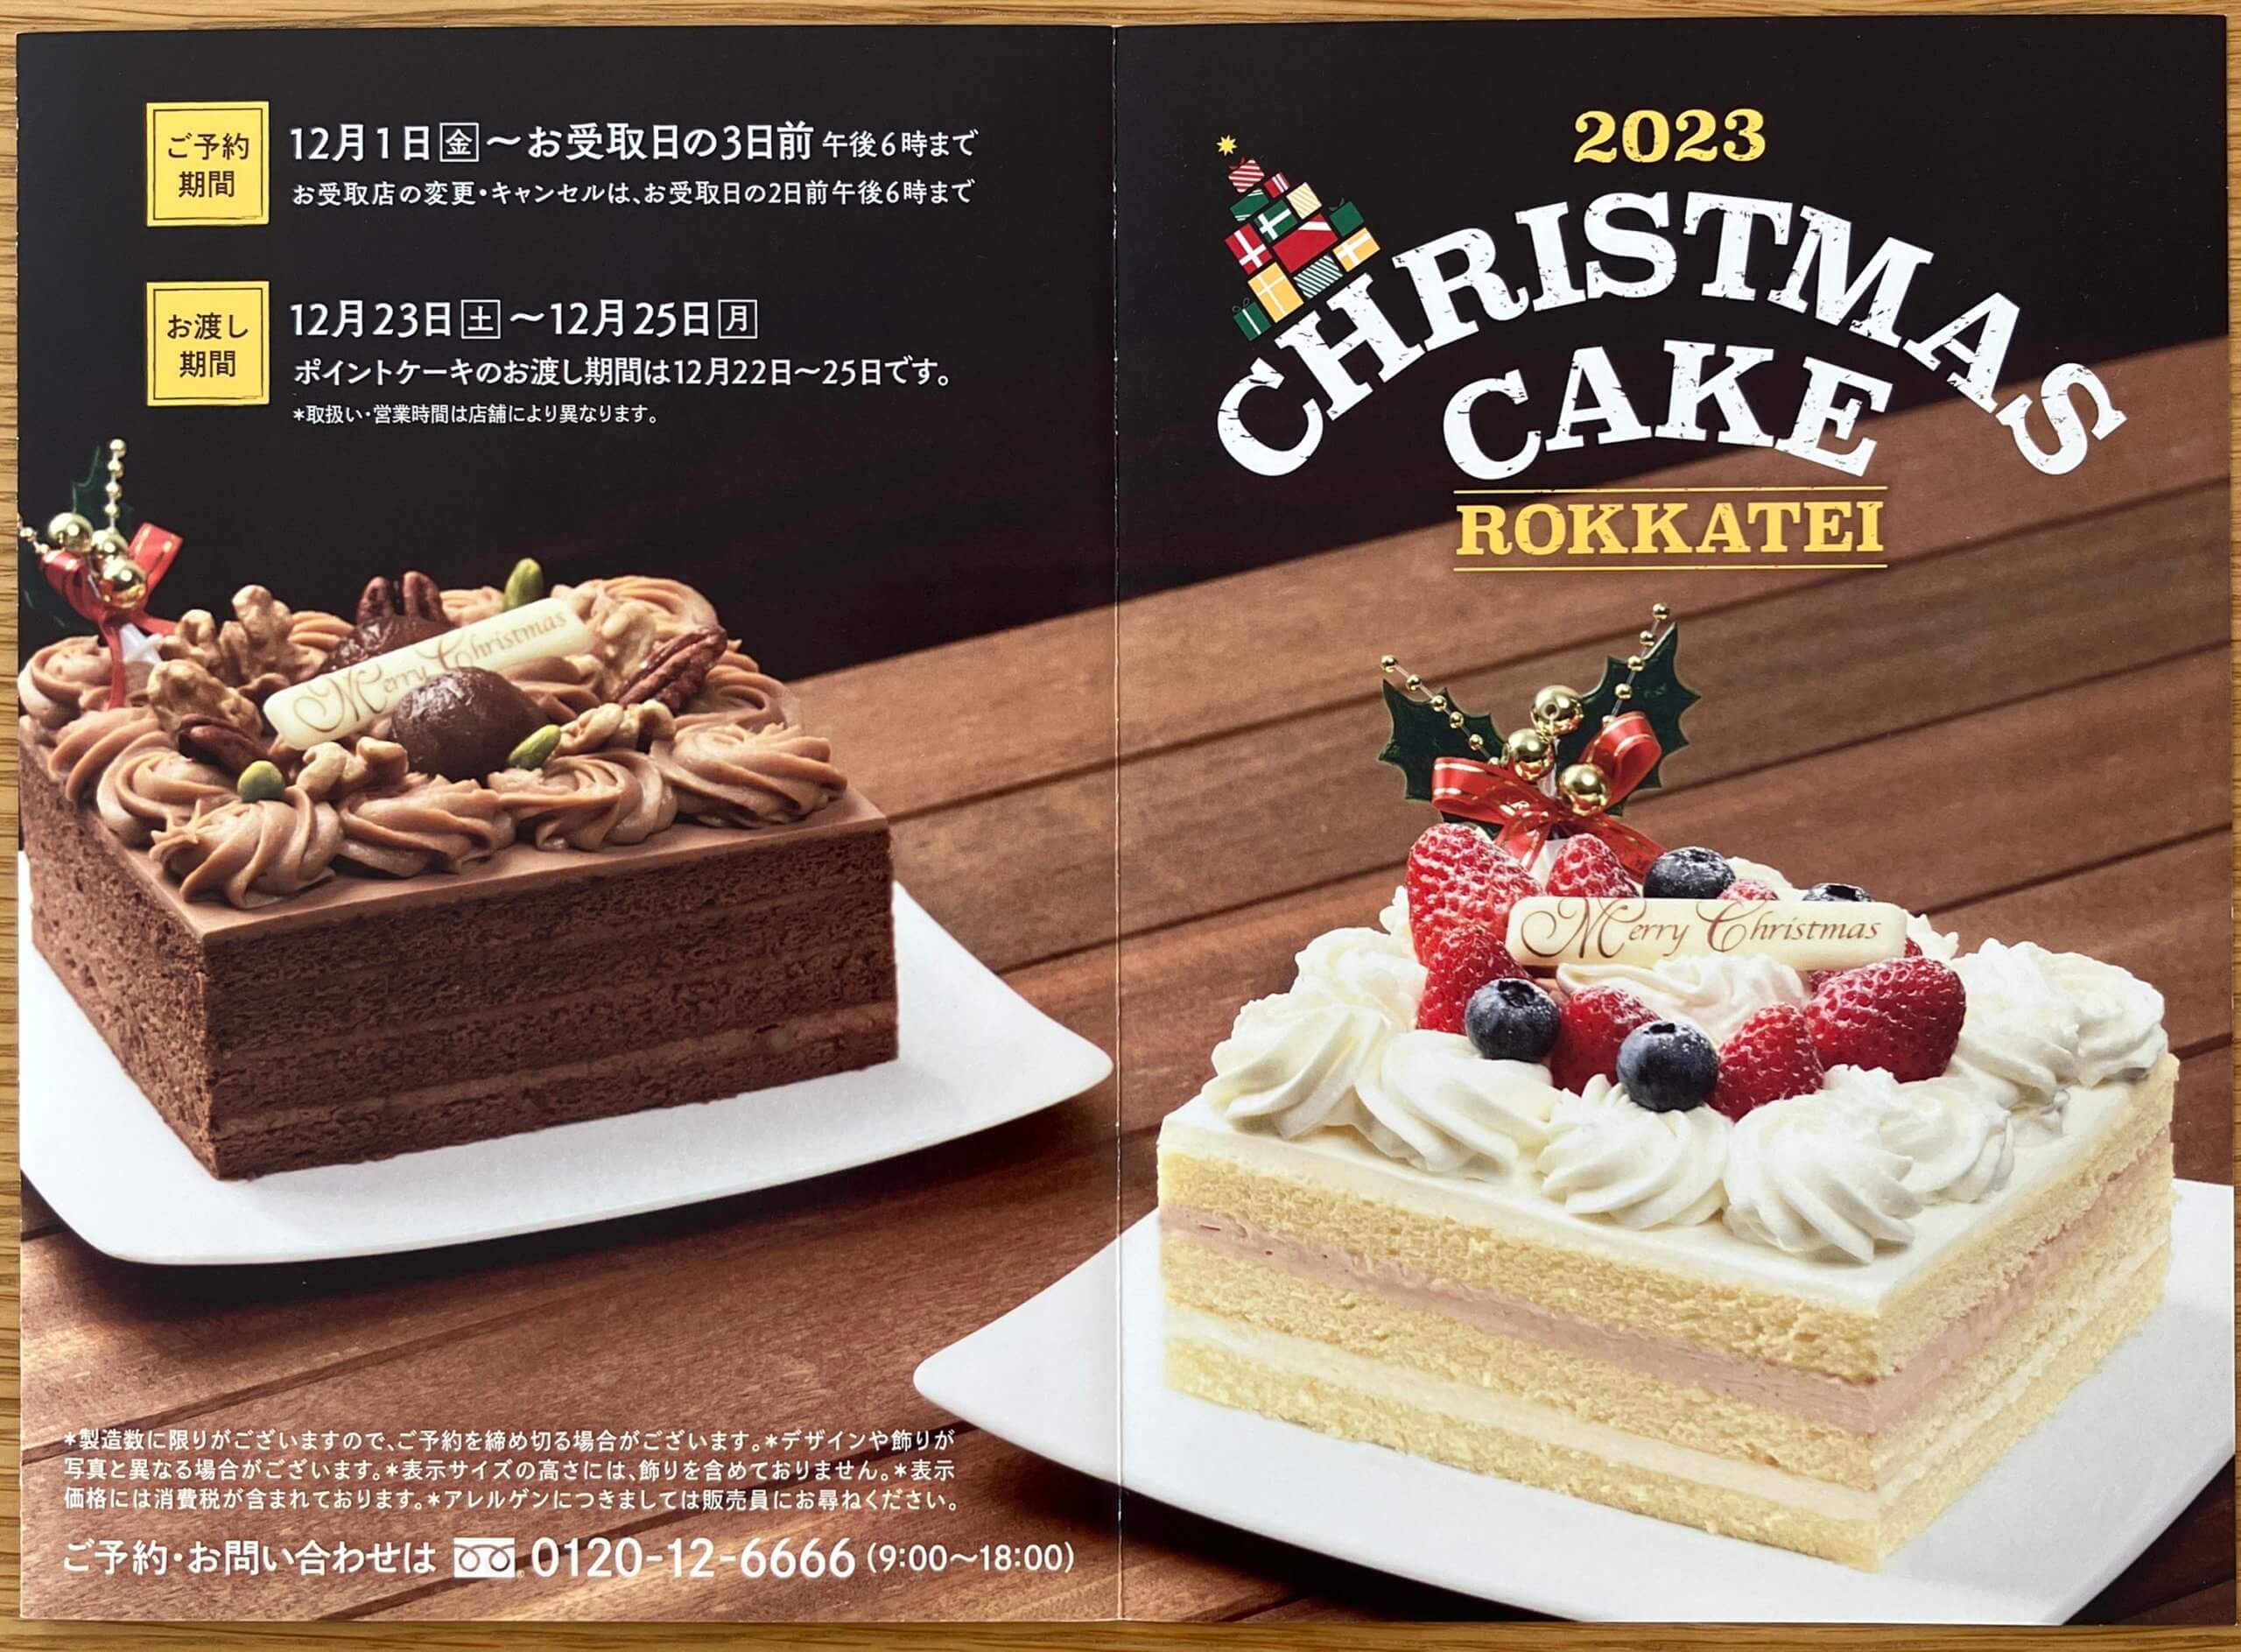 六花亭ポイントカード 1200ポイント クリスマスケーキ 極楽ラウンジ 